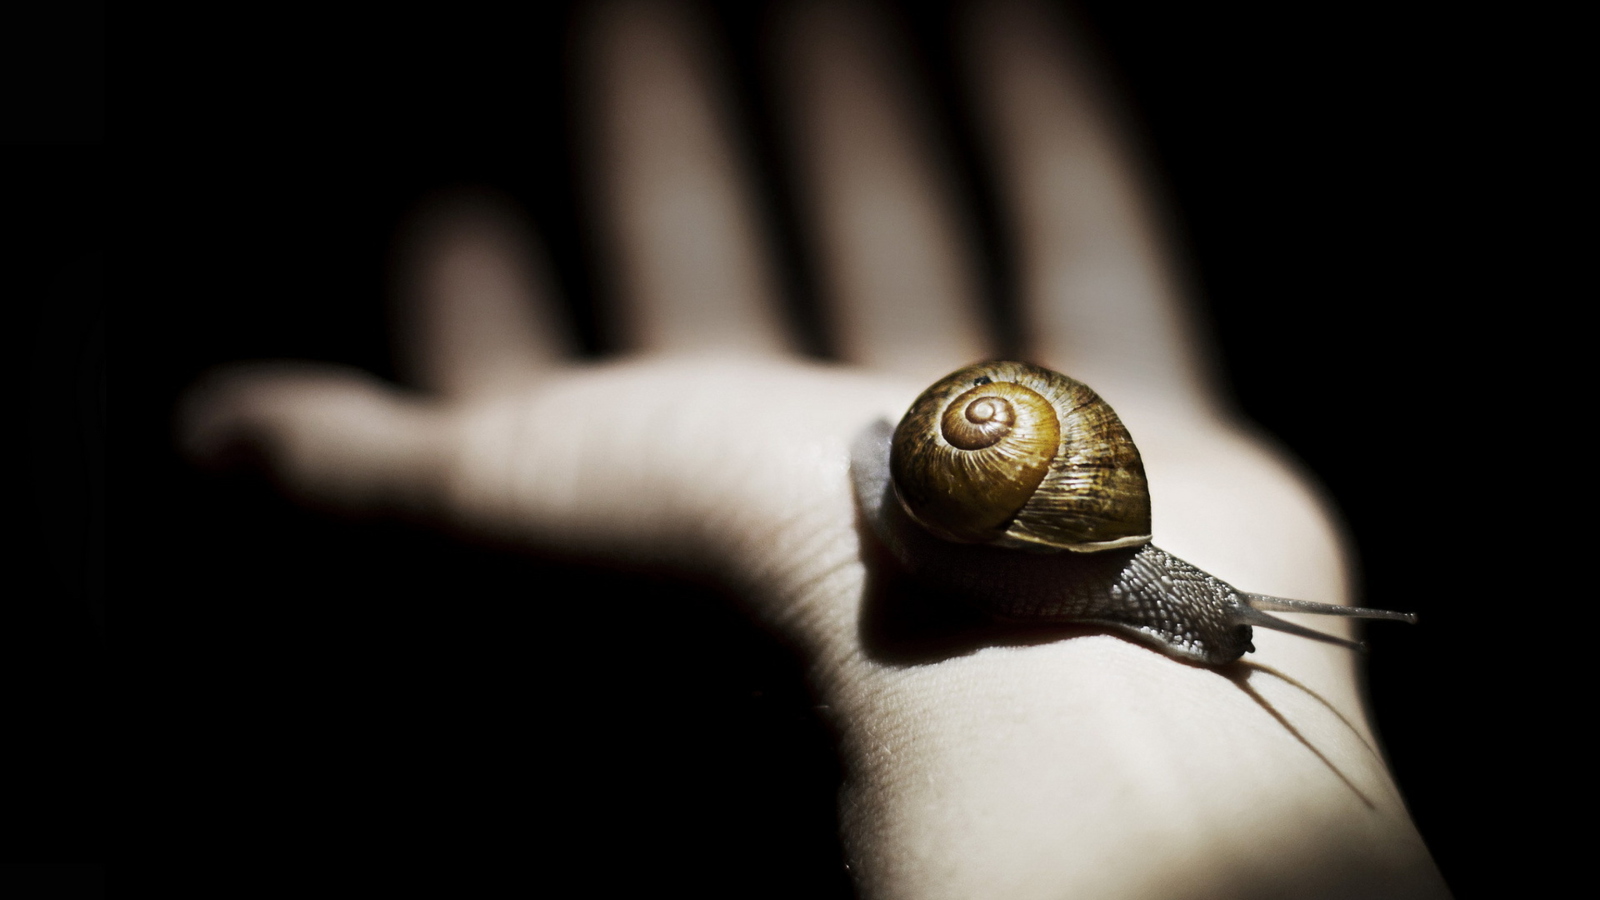 Обои Snail On Hand 1600x900